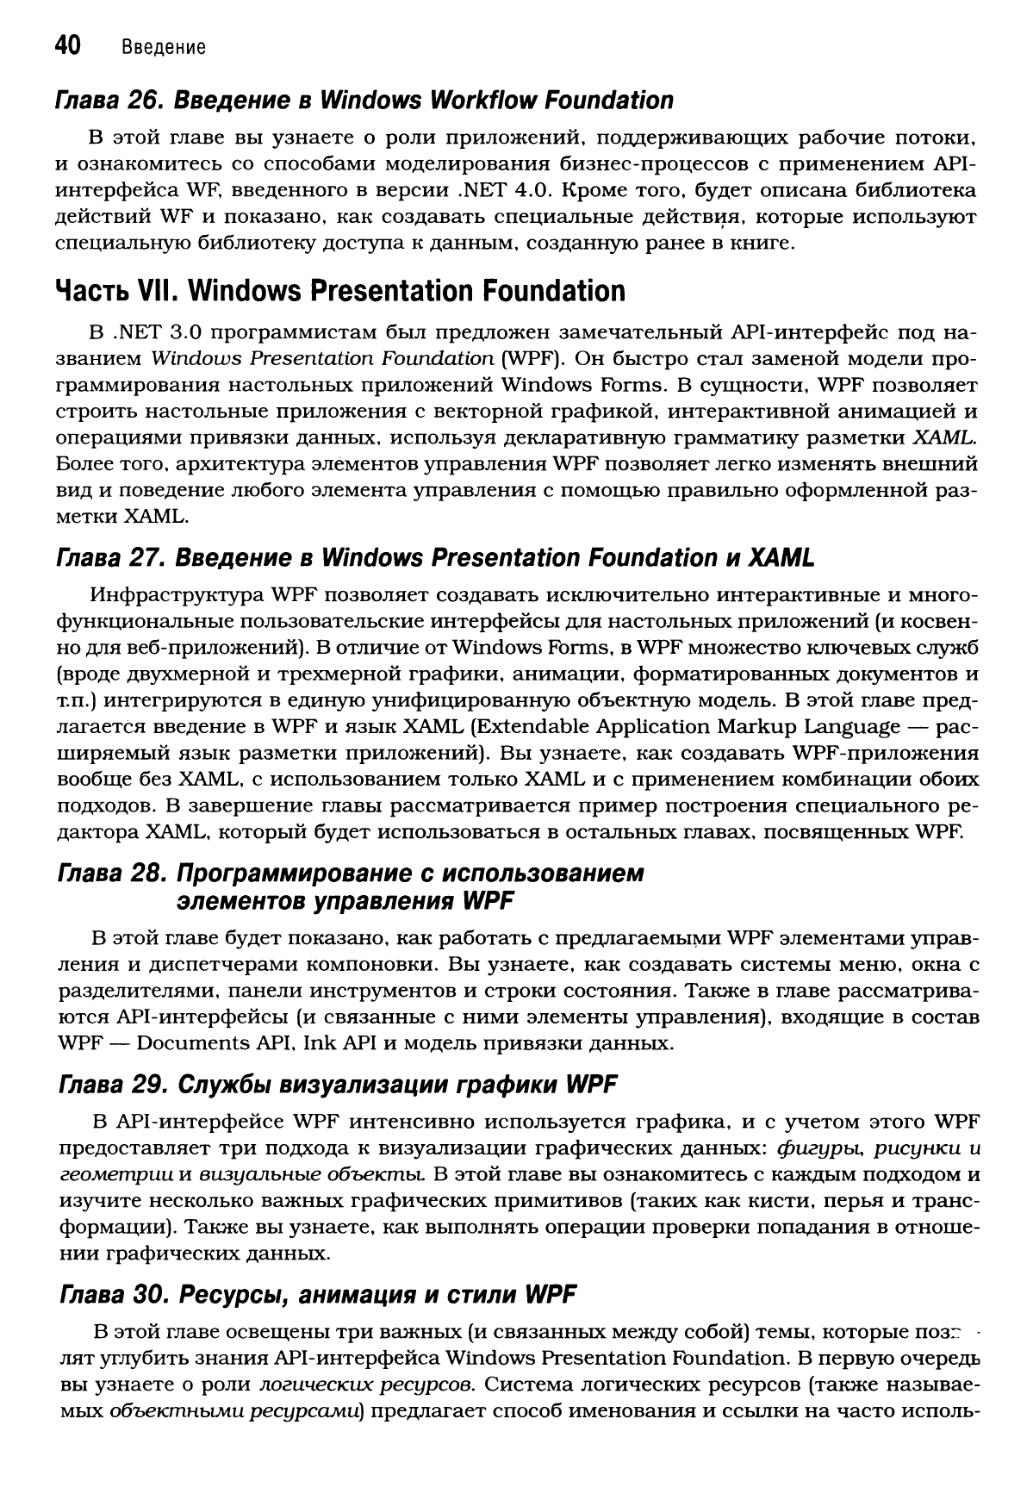 Часть VII. Windows Presentation Foundation